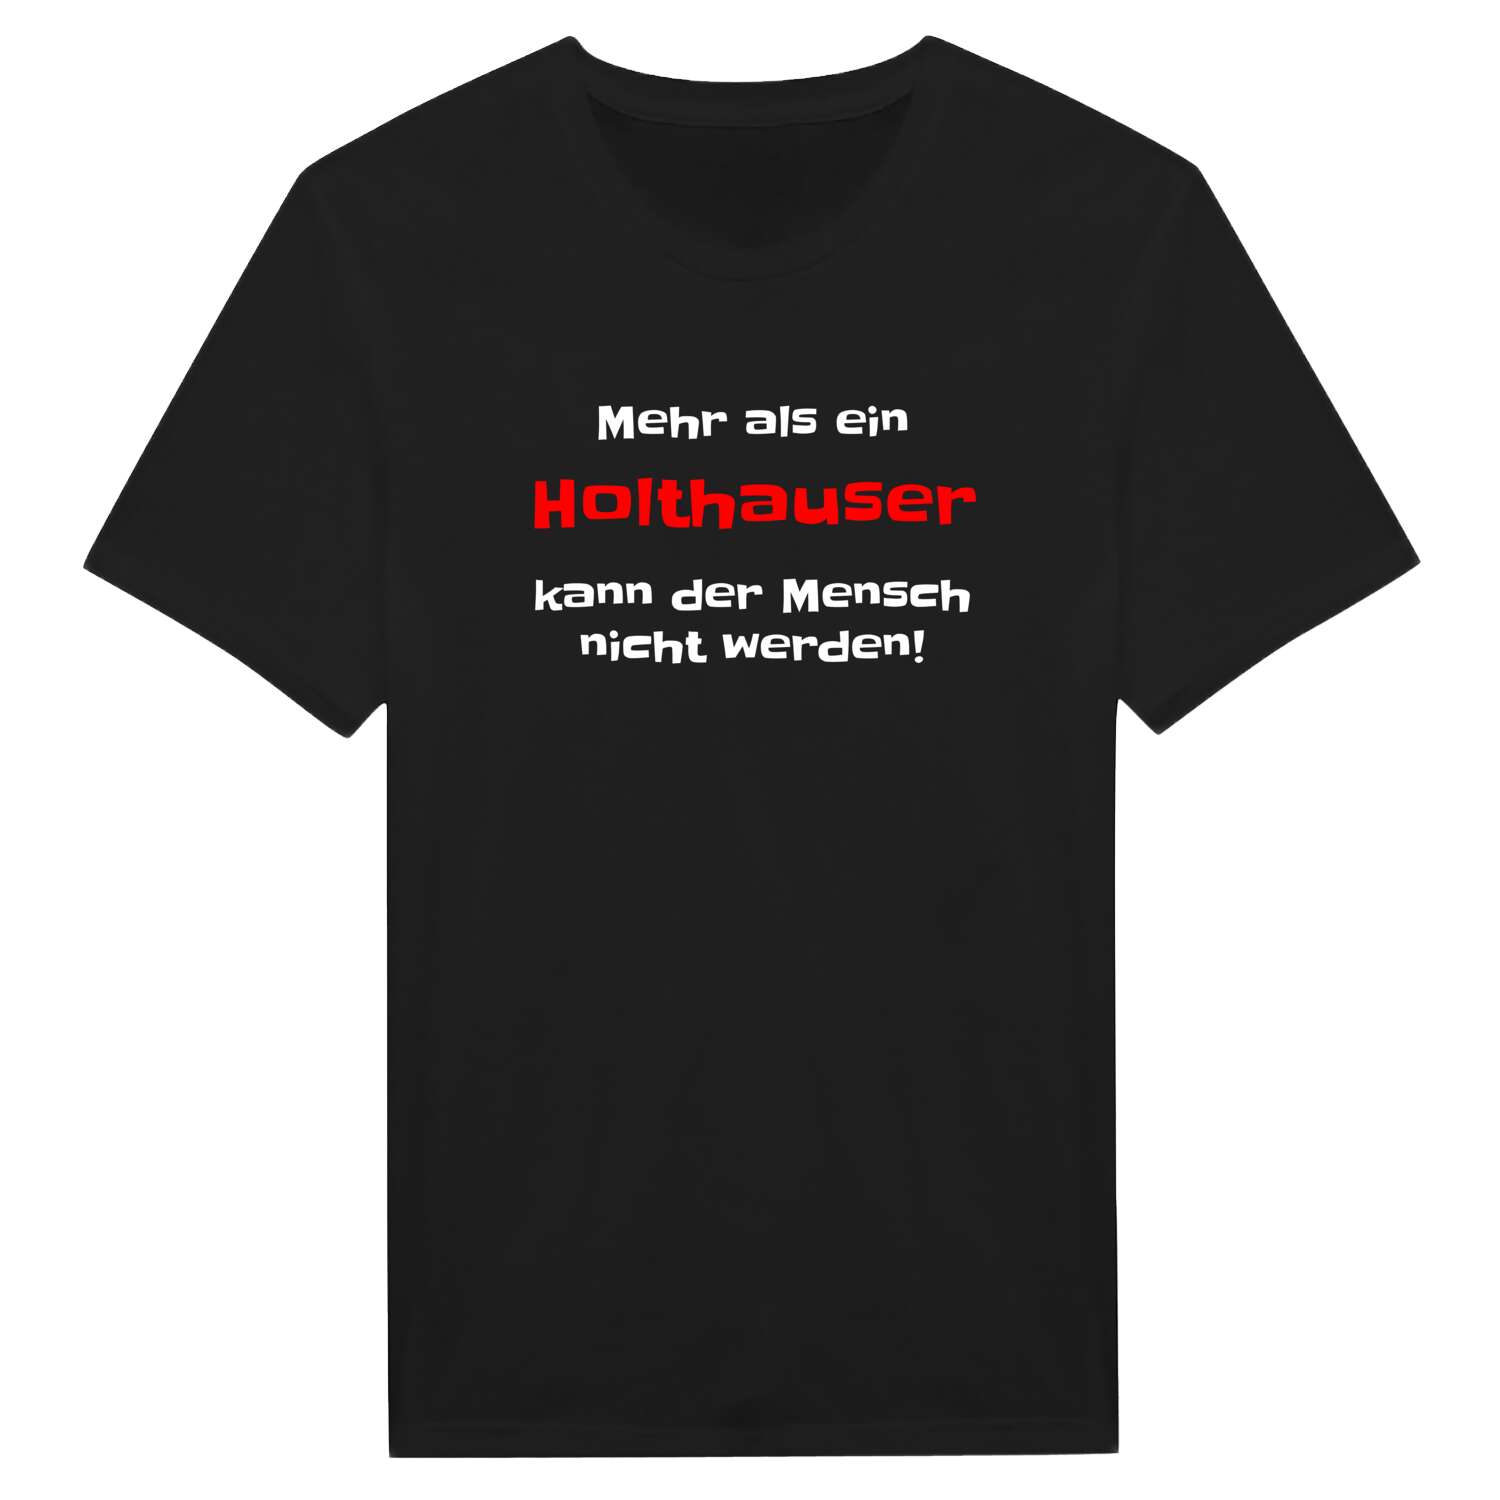 Holthaus T-Shirt »Mehr als ein«